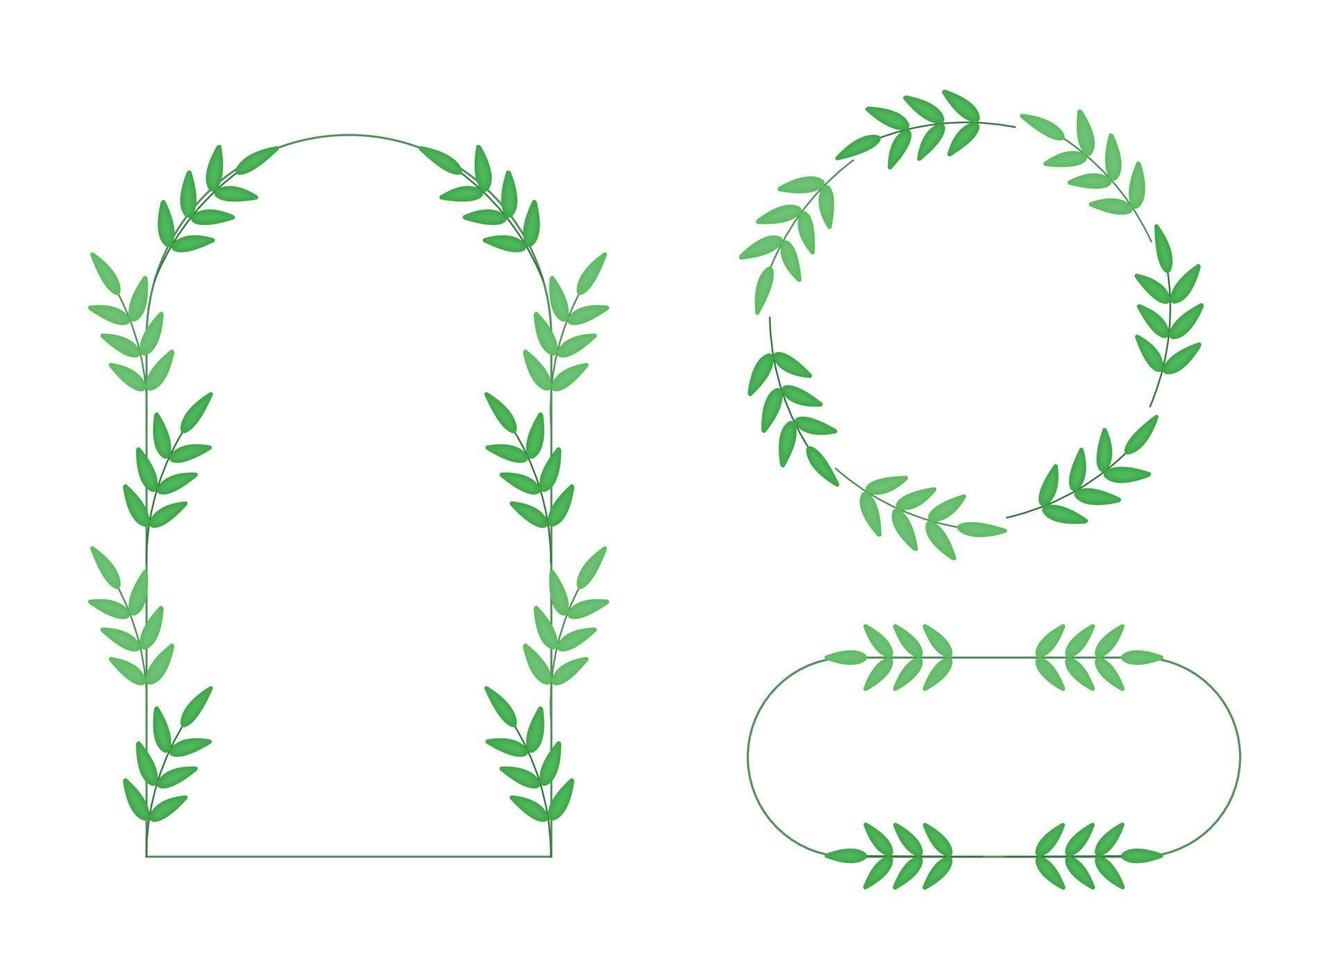 ensemble de branches de cadres de lauriers pour invitation de mariage, cartes. éléments vectoriels décoratifs pour la conception. plantes vertes isolées sur fond blanc vecteur